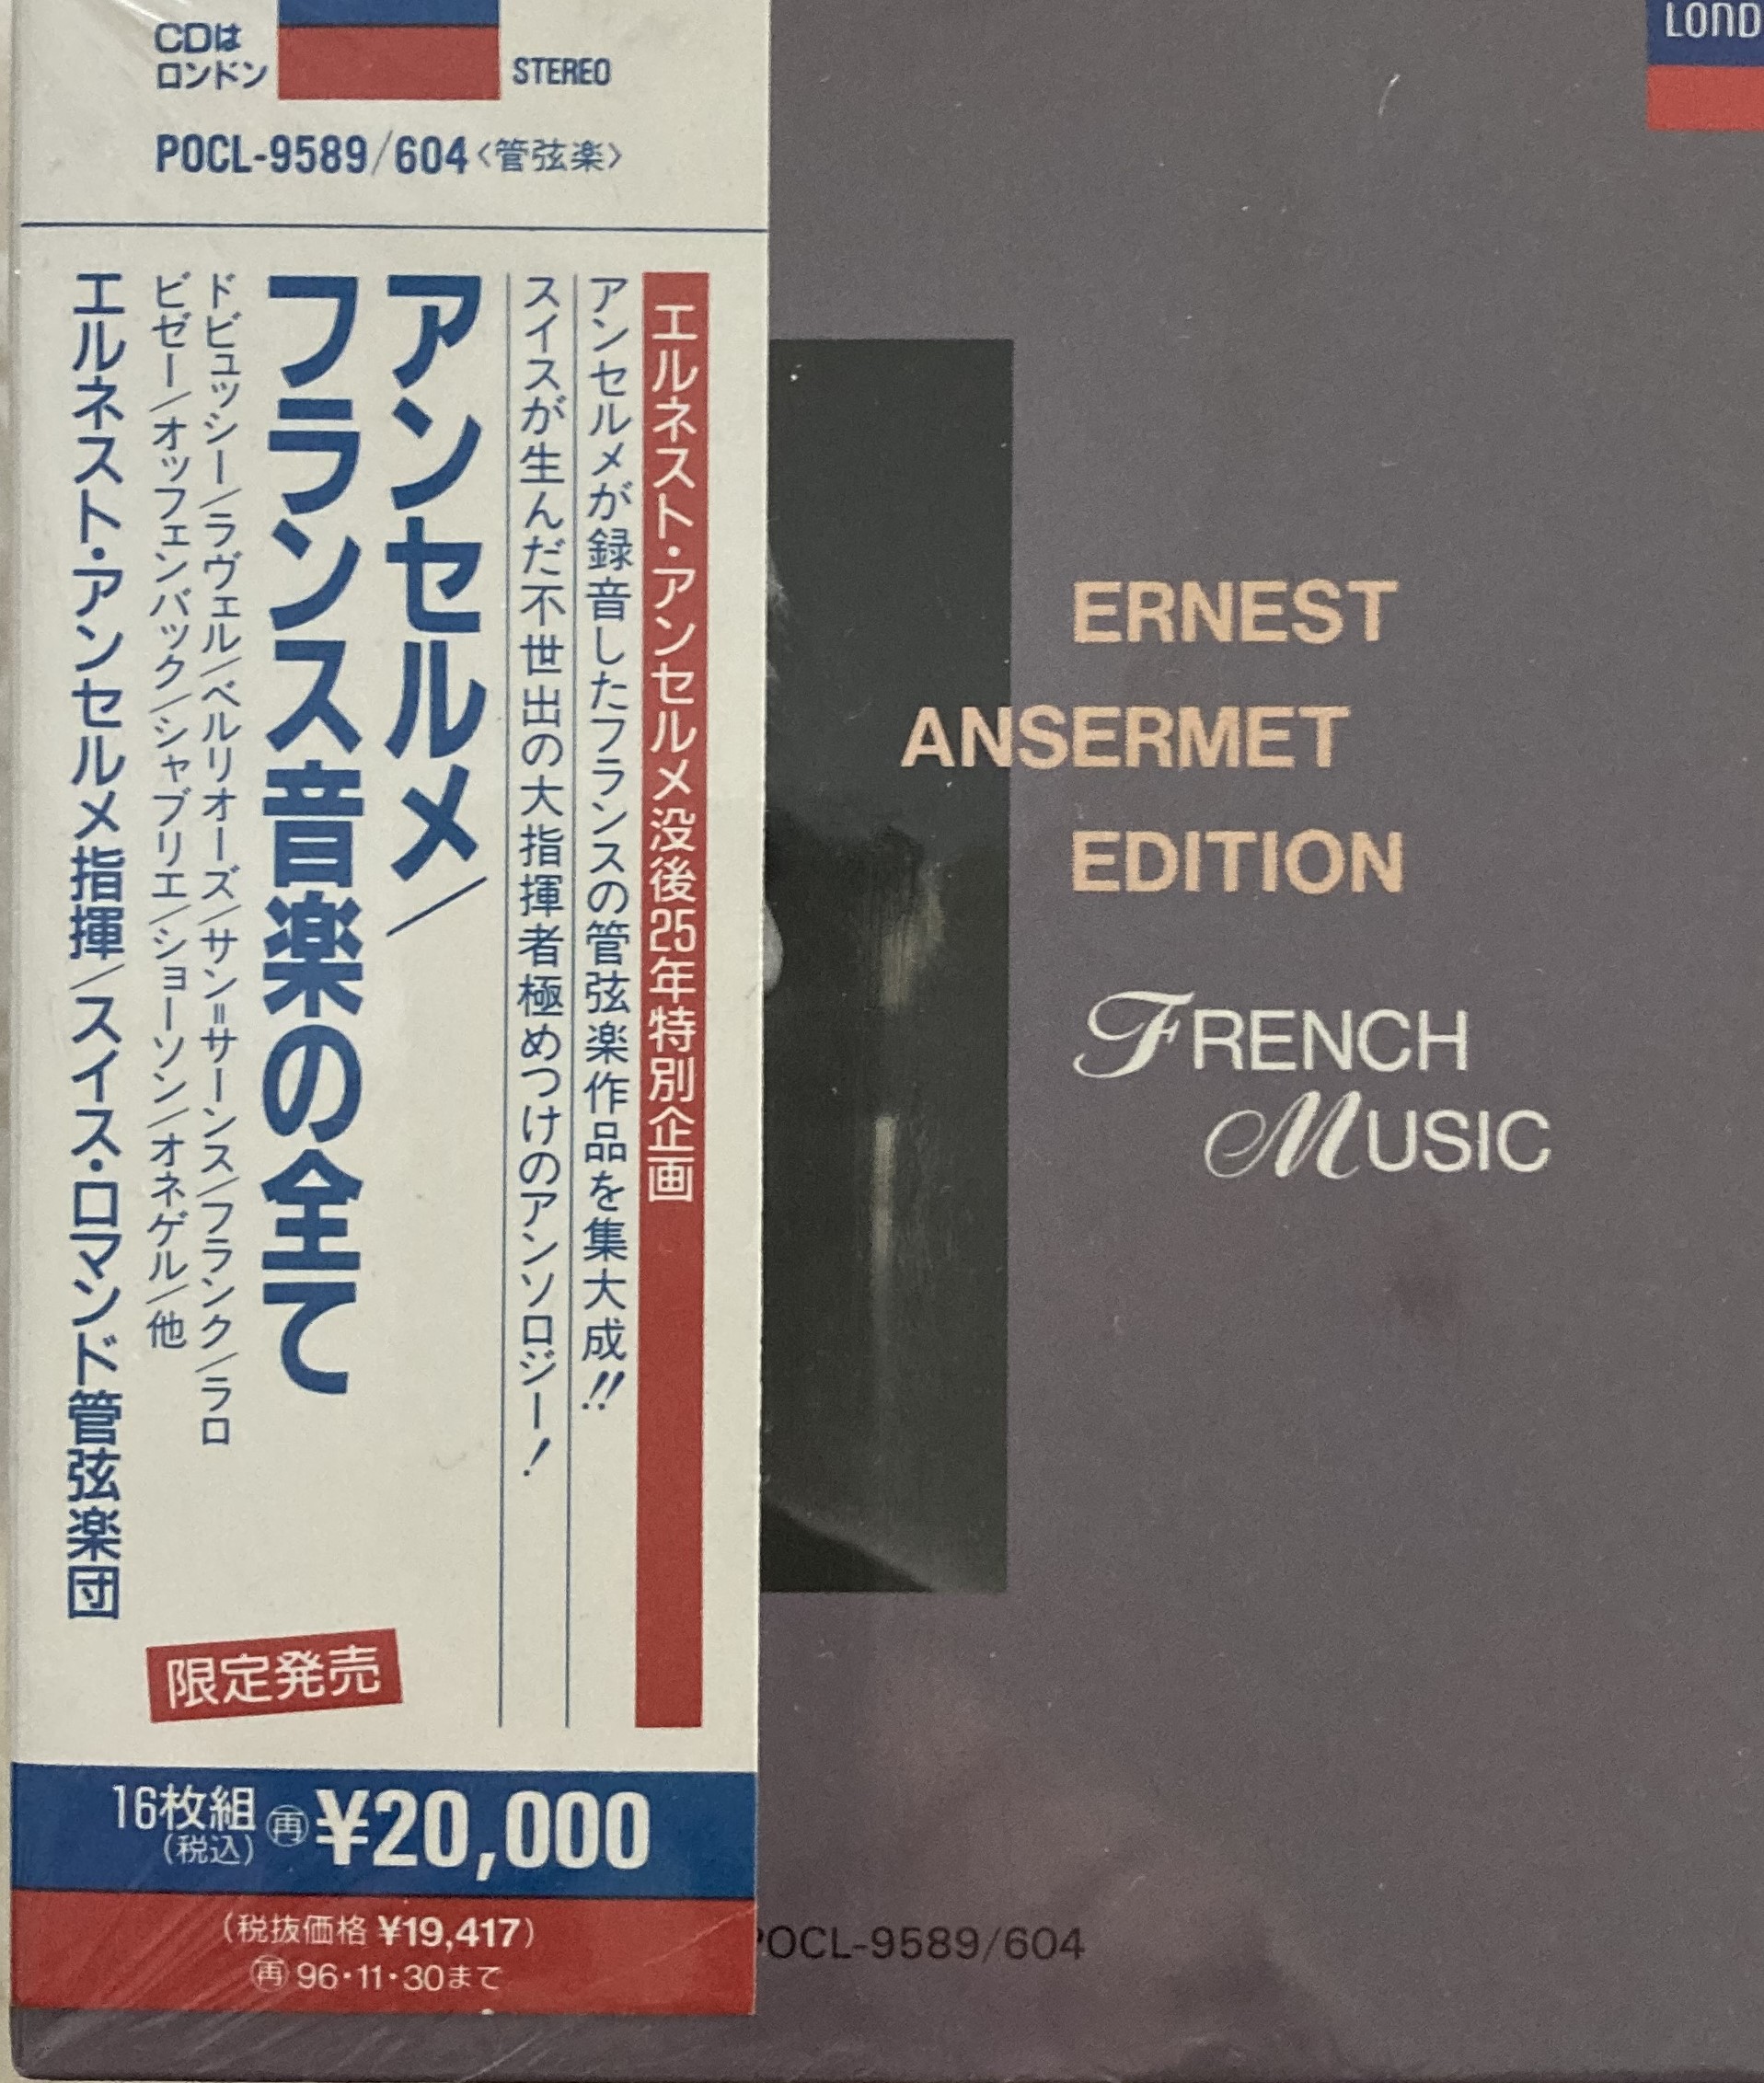 スイスの大指揮者アンセルメが最も得意としたフランス音楽の録音全集の写真